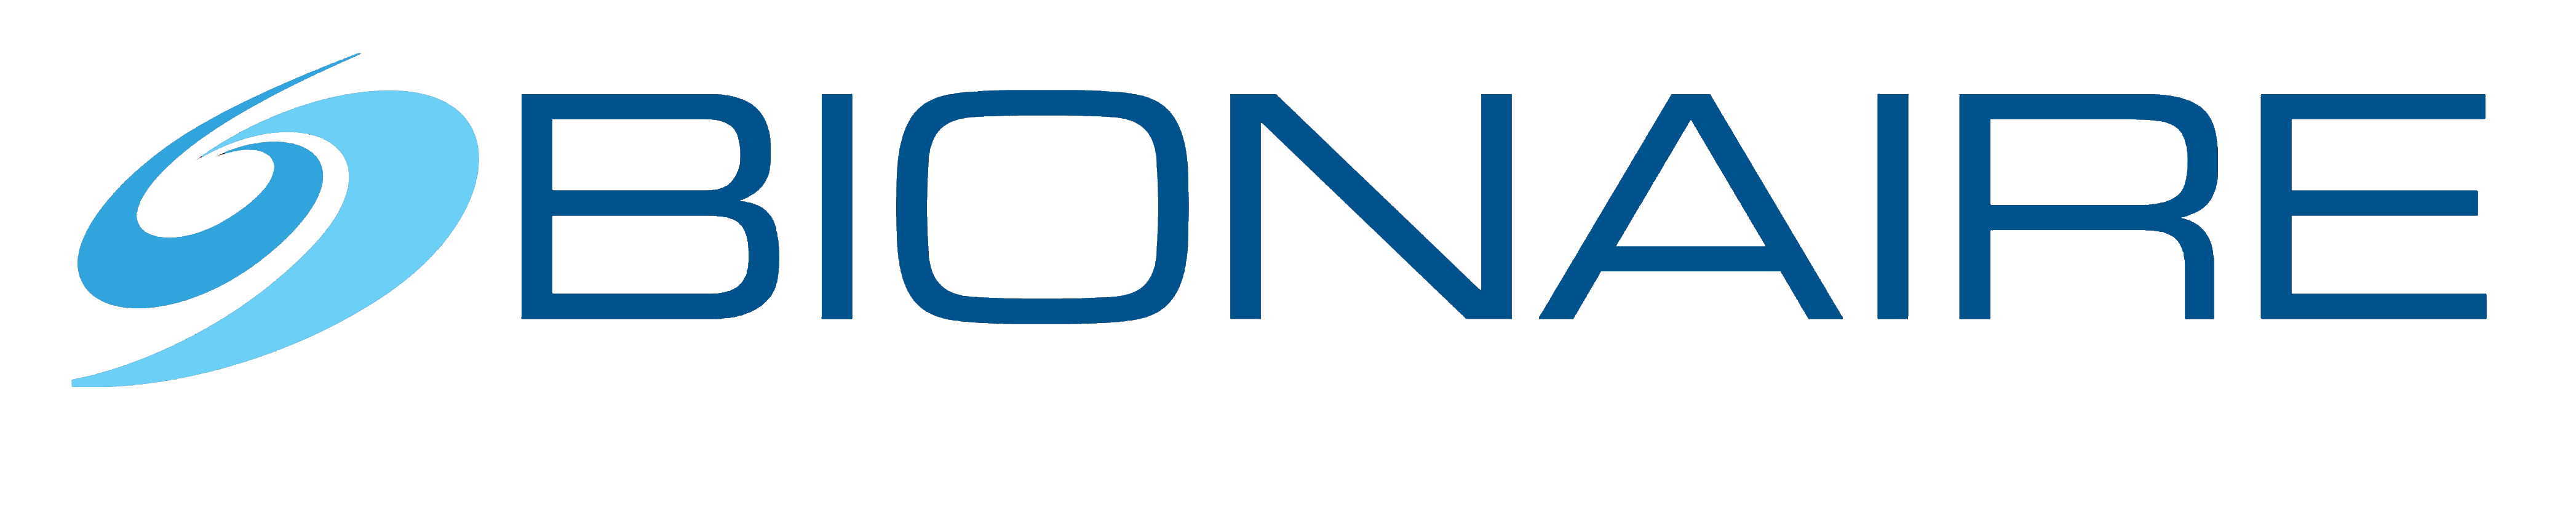 Bionaire Logo